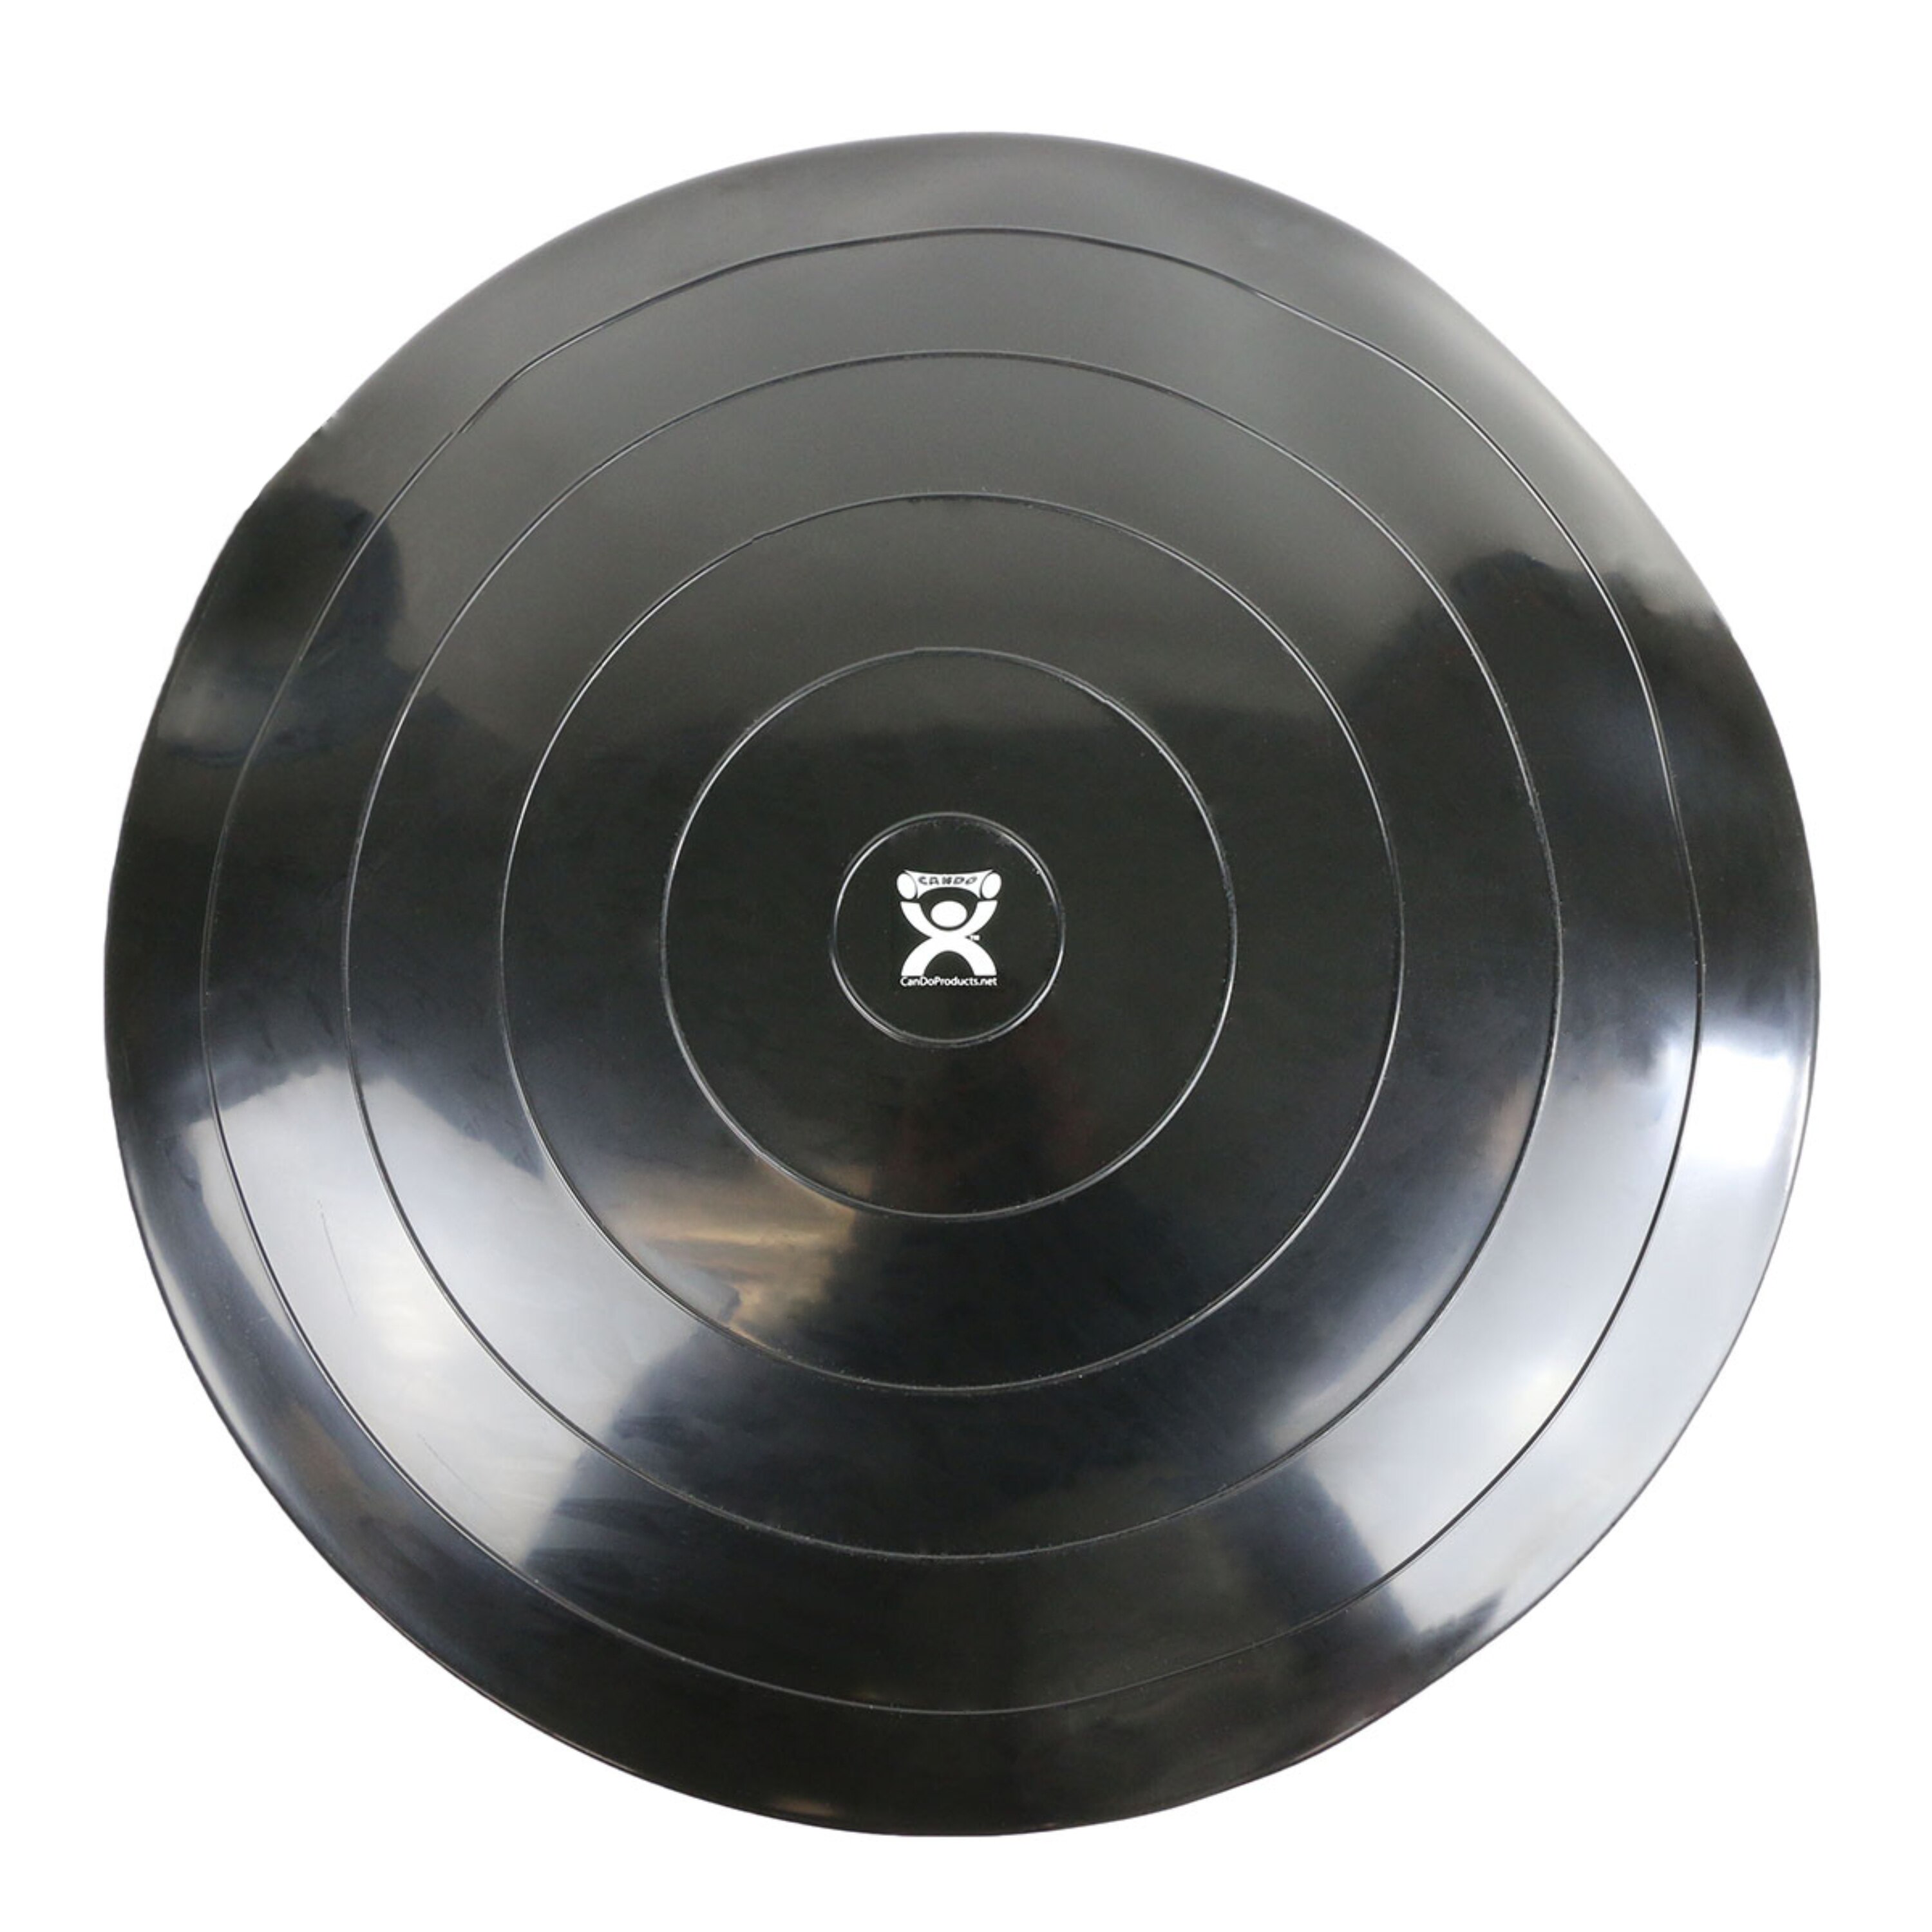 Fabrication Enterprises CanDo Balance Disc, 24 Diameter, Black , CVS